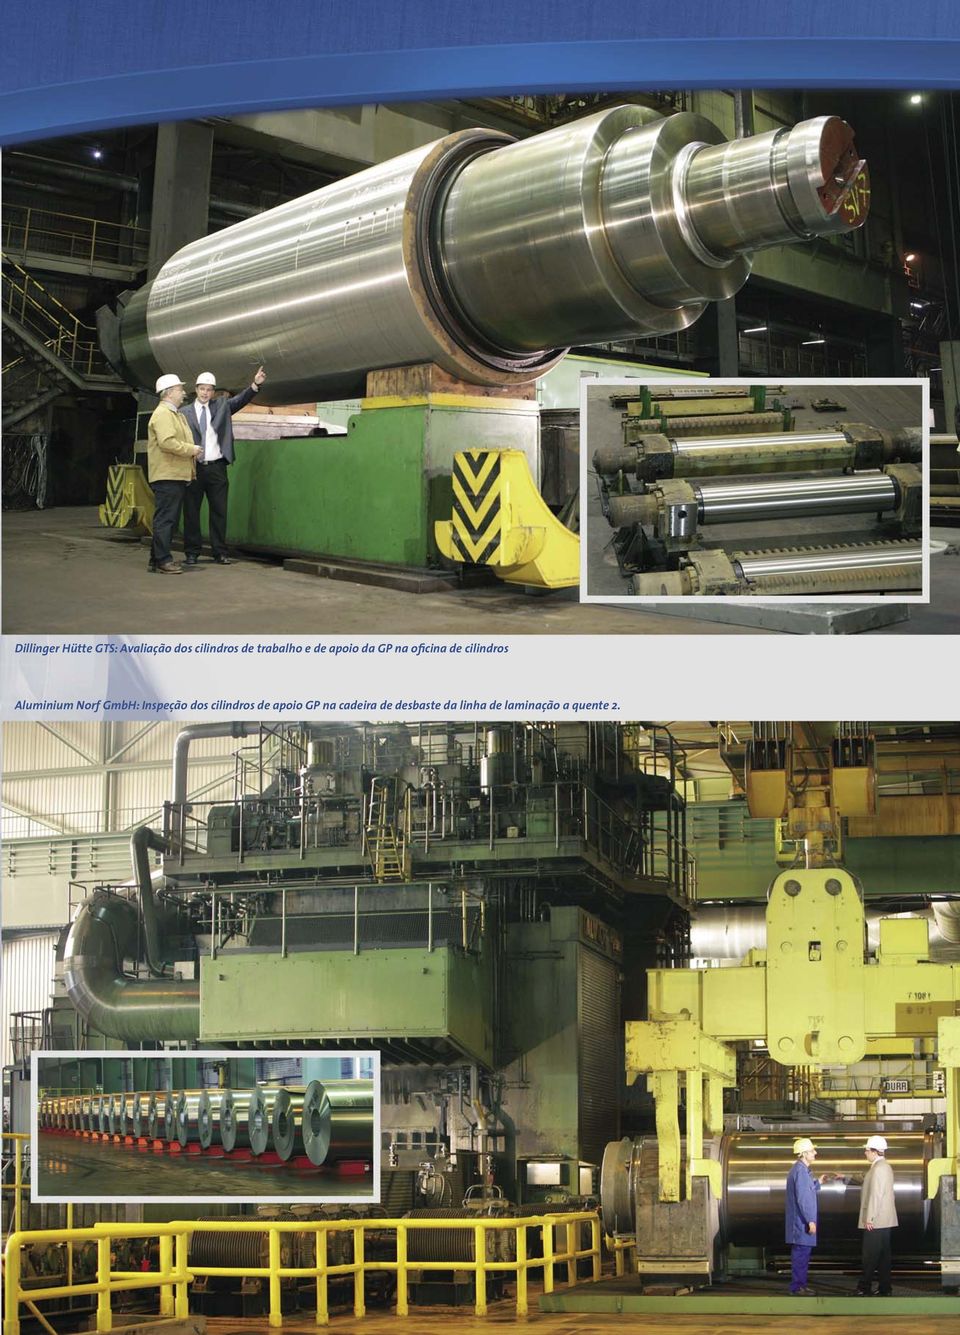 Aluminium Norf GmbH: Inspeção dos cilindros de apoio